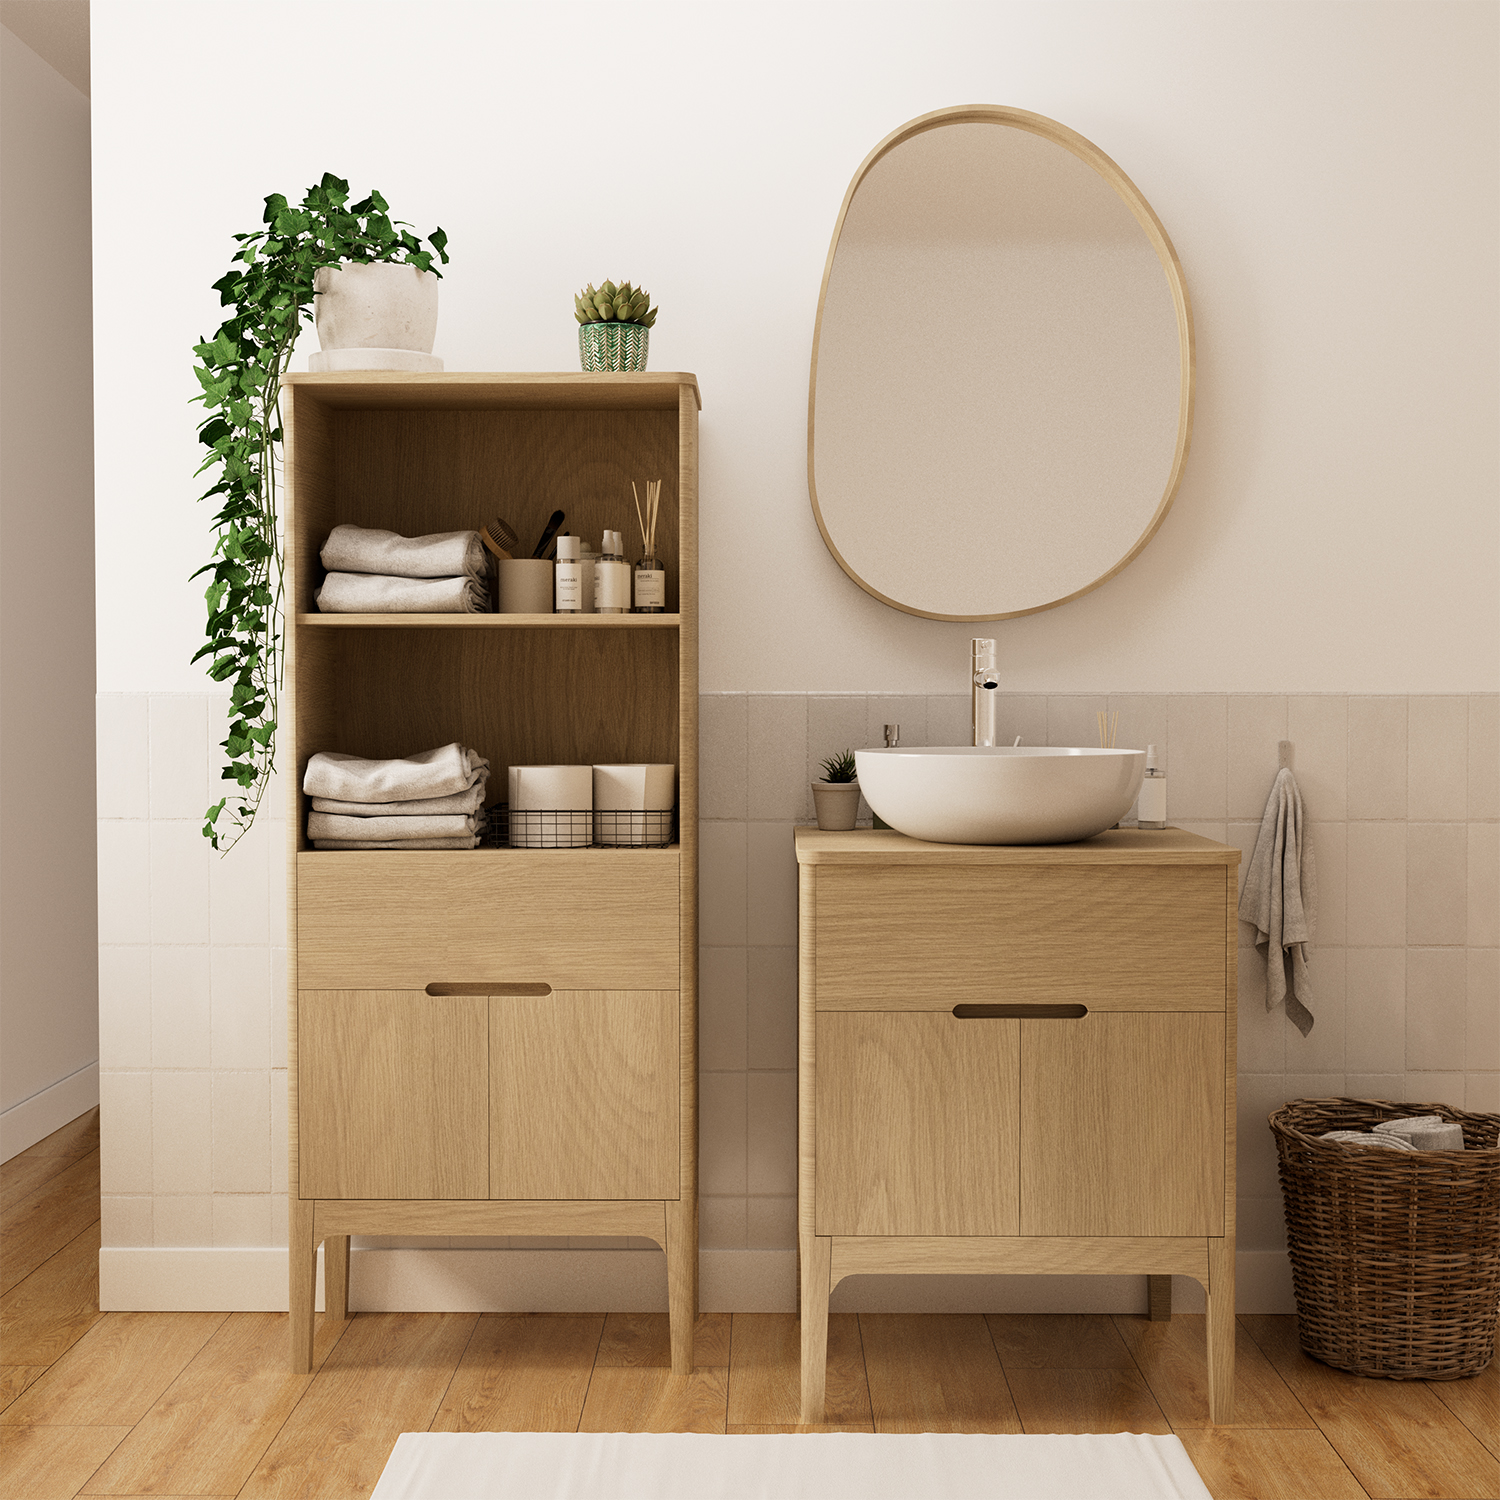 Le meuble de salle de bain en bois : une matière naturelle à adopter